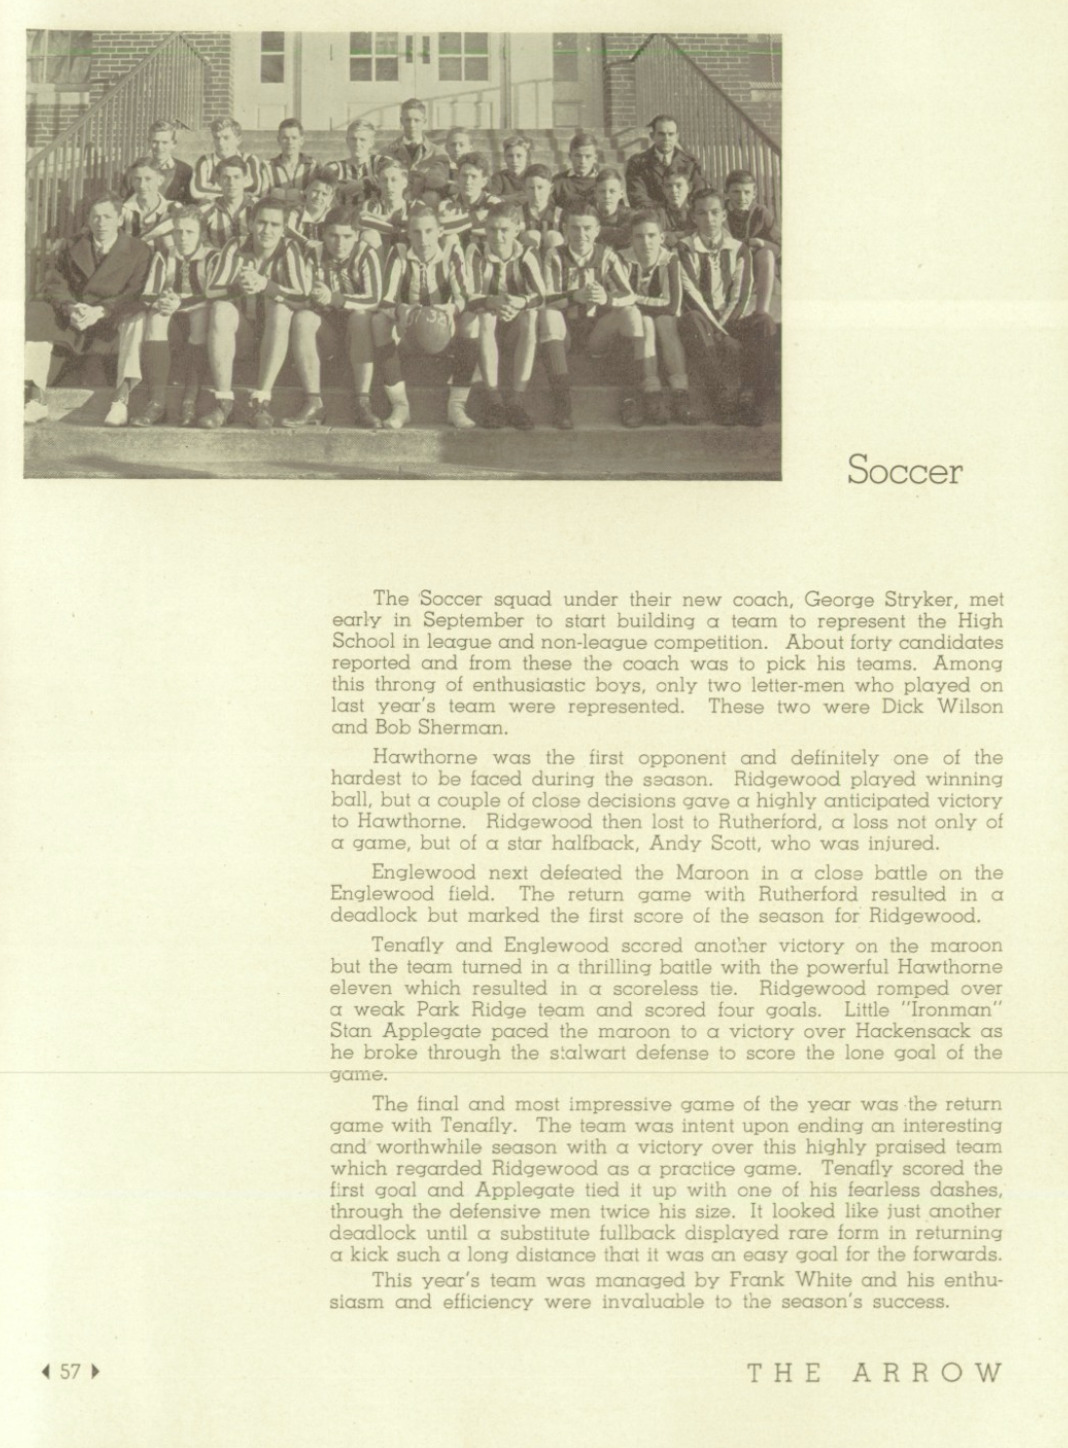 1937 Boys’ Soccer Team